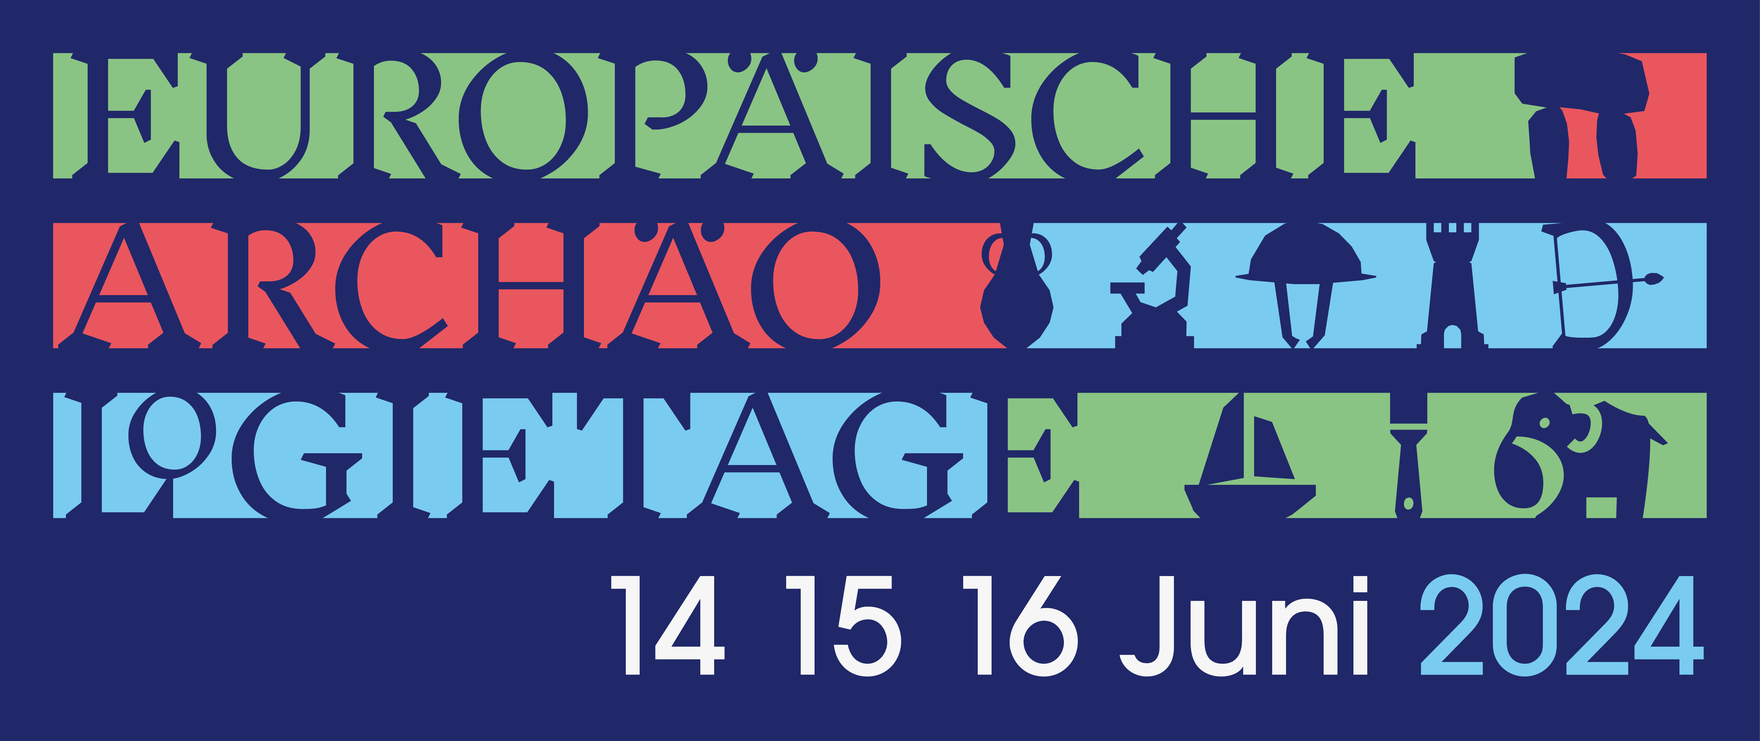 Das Logo der Europäischen Archäologietage vom 14. - 16. Juni 2024